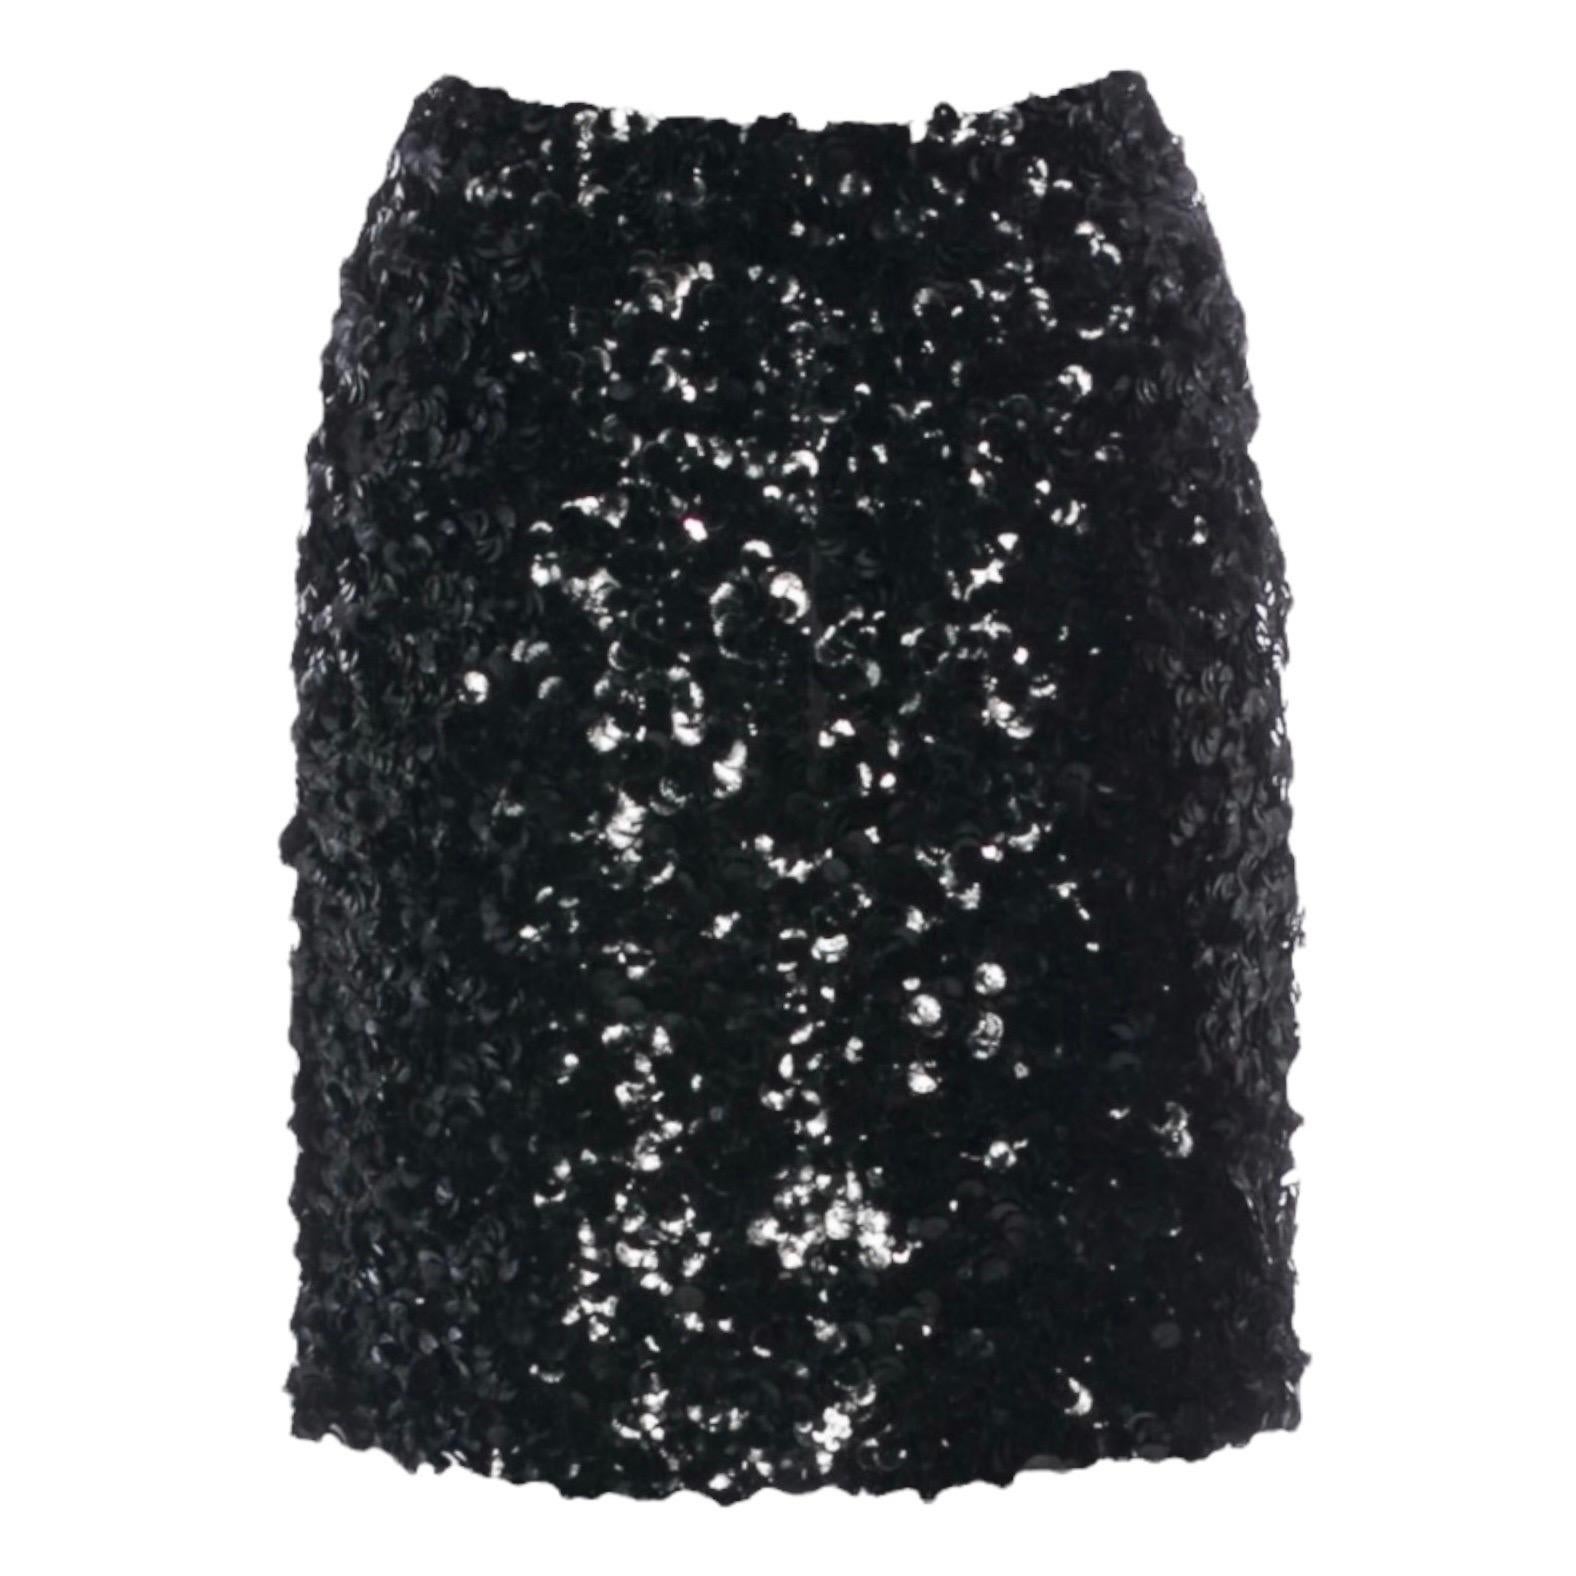 UNWORN Chanel Metallic Fantasy Tweed Sequin Trim Jacket Blazer Skirt Suit 38-40 For Sale 7